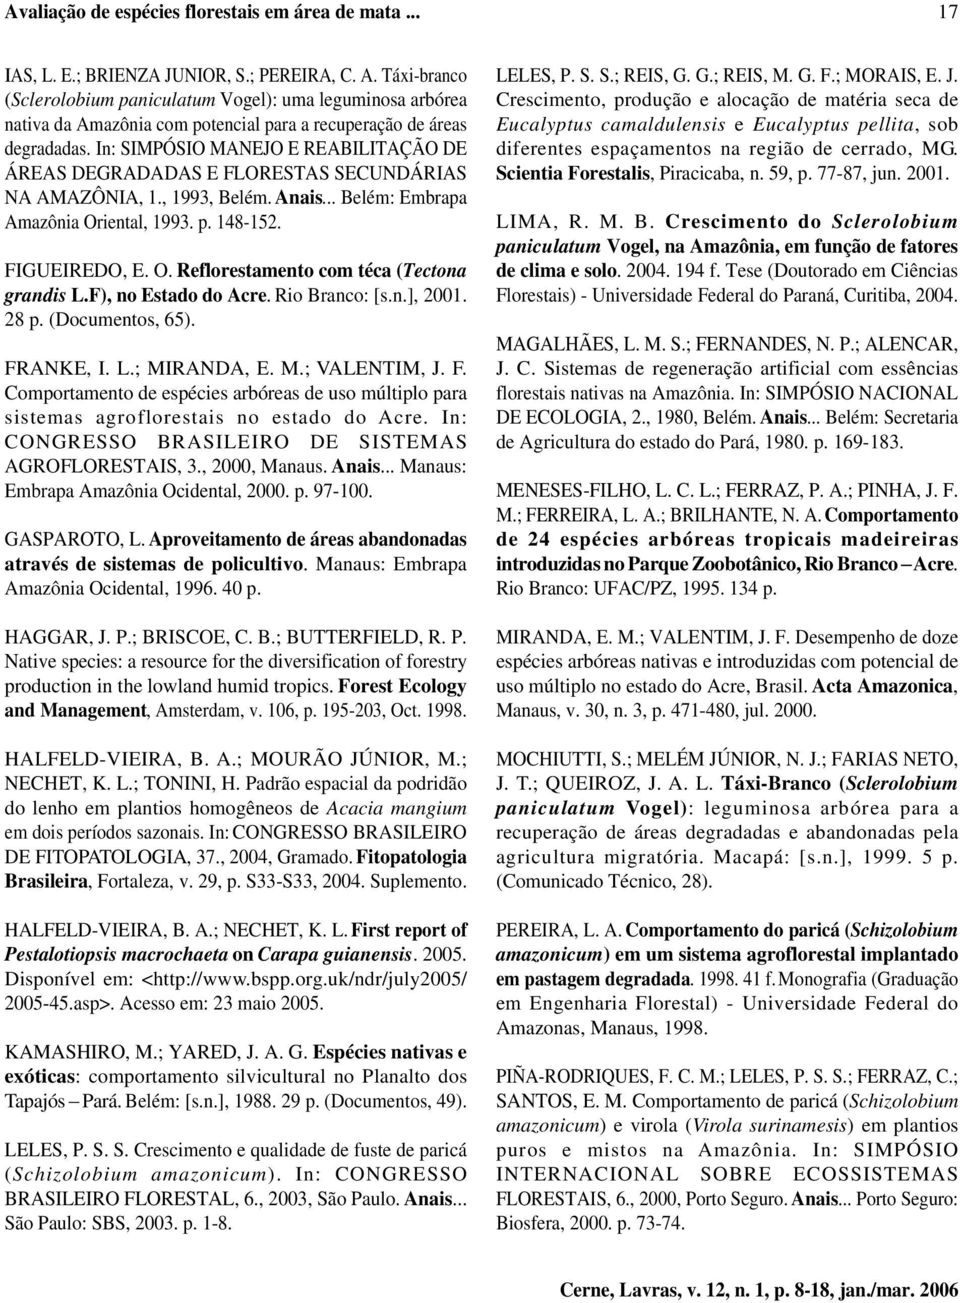 In: SIMPÓSIO MANEJO E REABILITAÇÃO DE ÁREAS DEGRADADAS E FLORESTAS SECUNDÁRIAS NA AMAZÔNIA, 1., 1993, Belém. Anais... Belém: Embrapa Amazônia Oriental, 1993. p. 148-152. FIGUEIREDO, E. O. Reflorestamento com téca (Tectona grandis L.